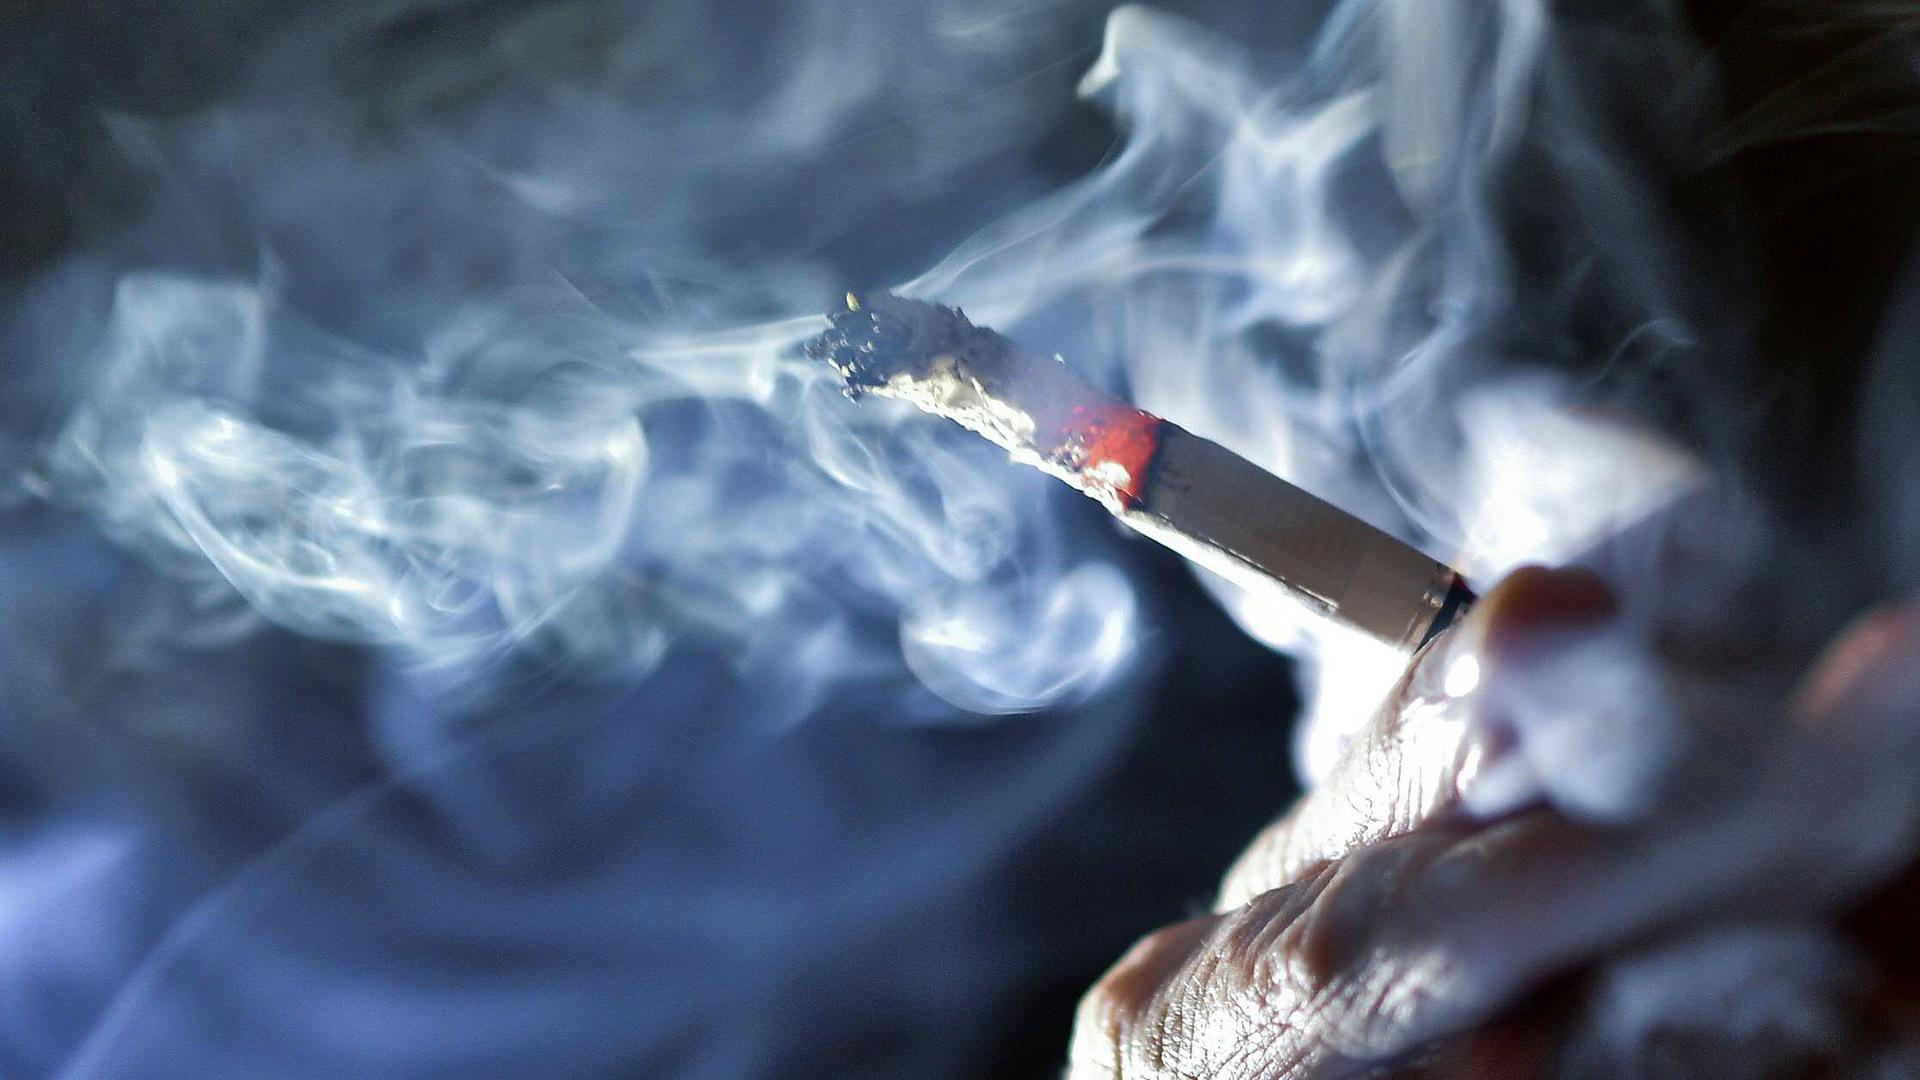 Archiv: Ein Raucher zieht an einer Zigarette, aufgenommen am 27.02.2018